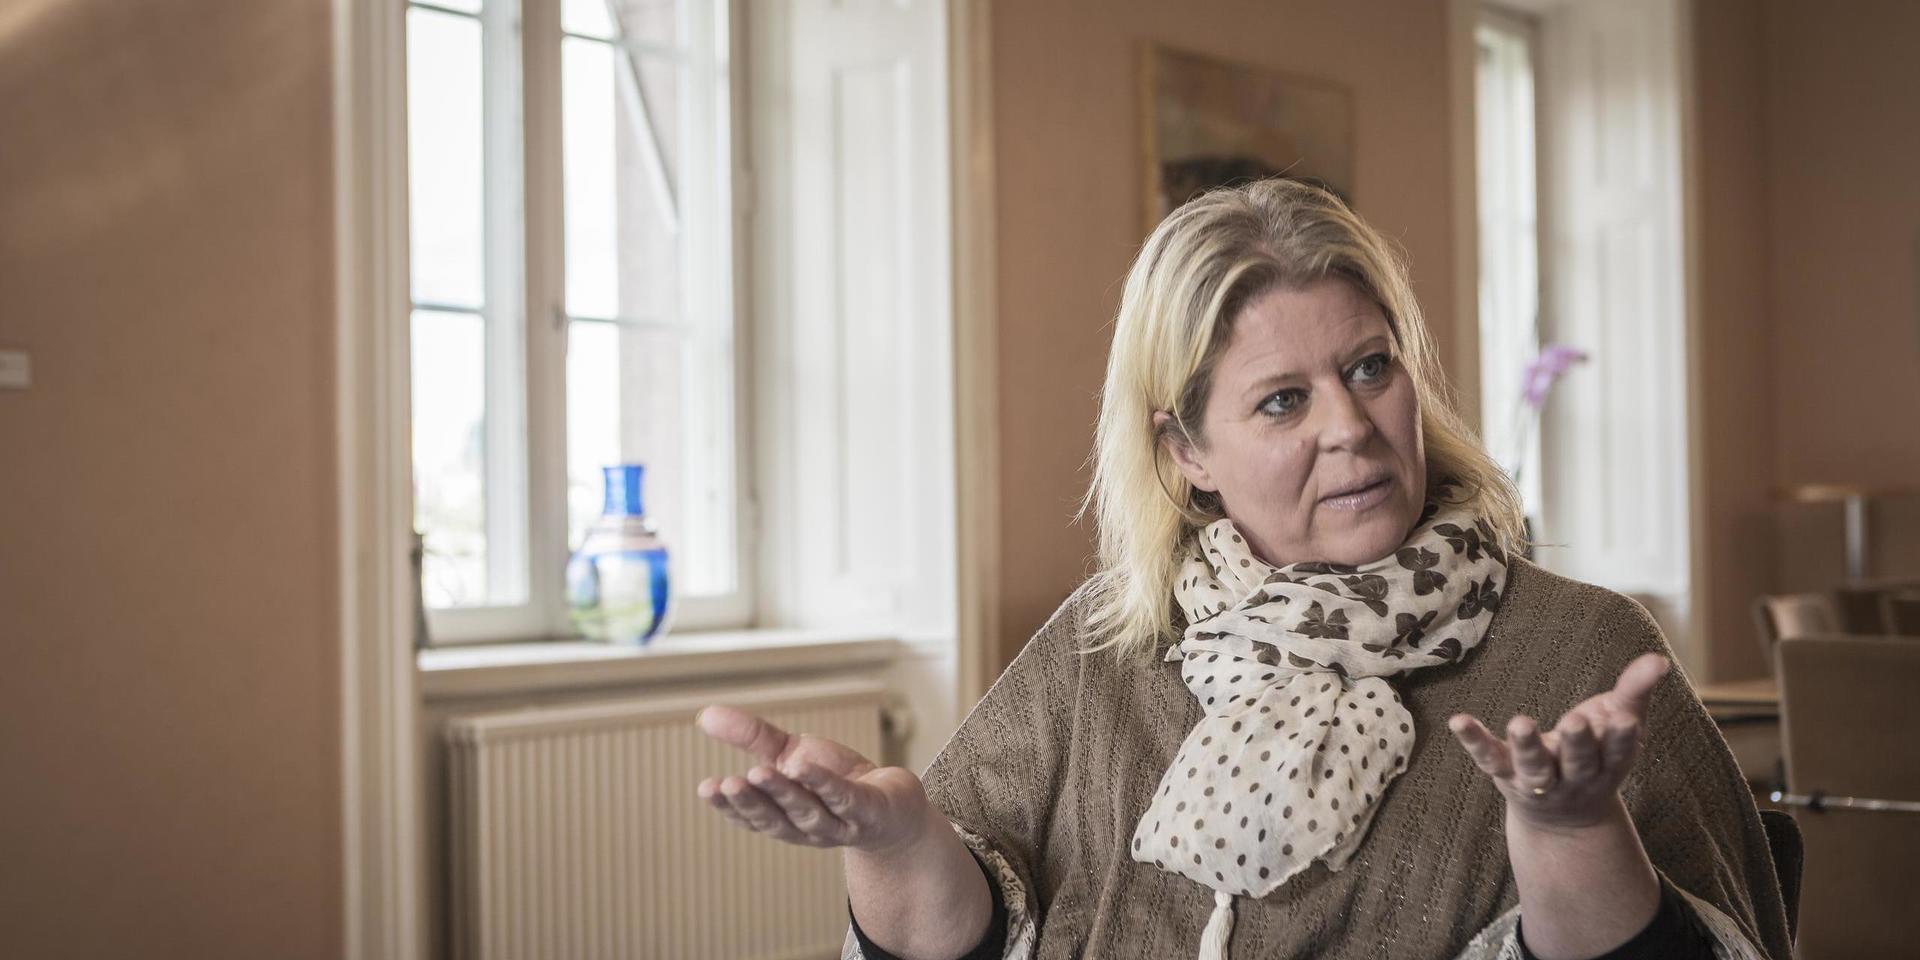 Camilla Waltersson Grönvall, socialpolitisk talesperson för Moderaterna, är kritisk mot regeringens utredning för lex Lilla hjärtat. Arkivbild.